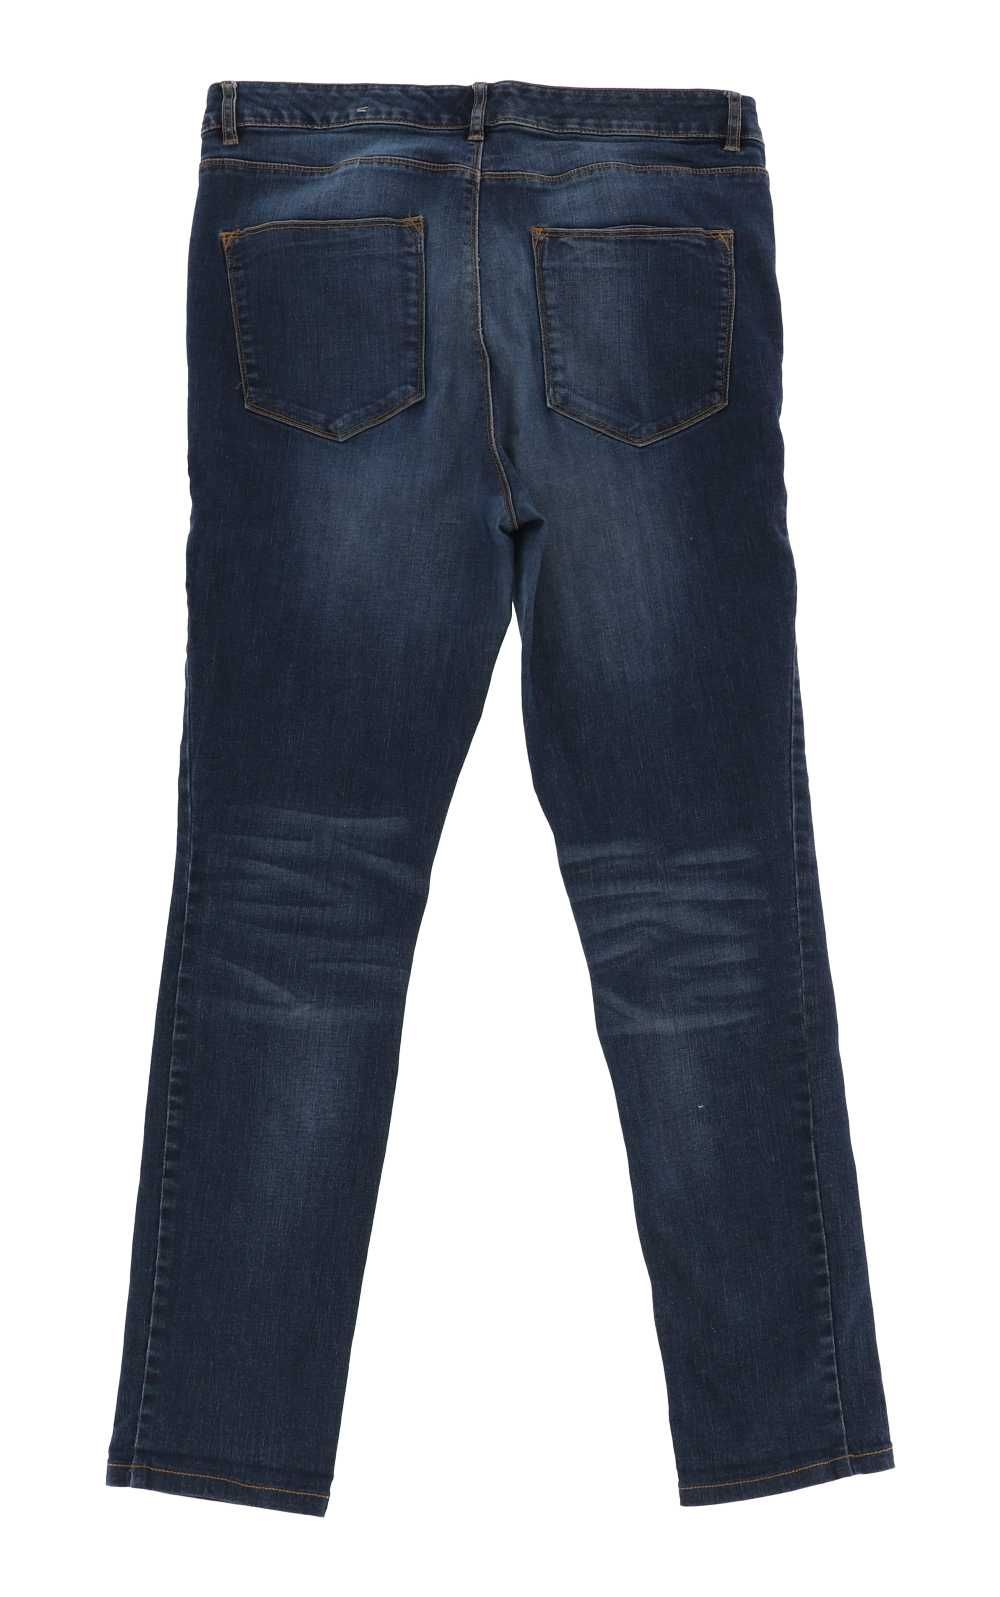 Ciemne spodnie marki Denim Brand, rozmiar 46